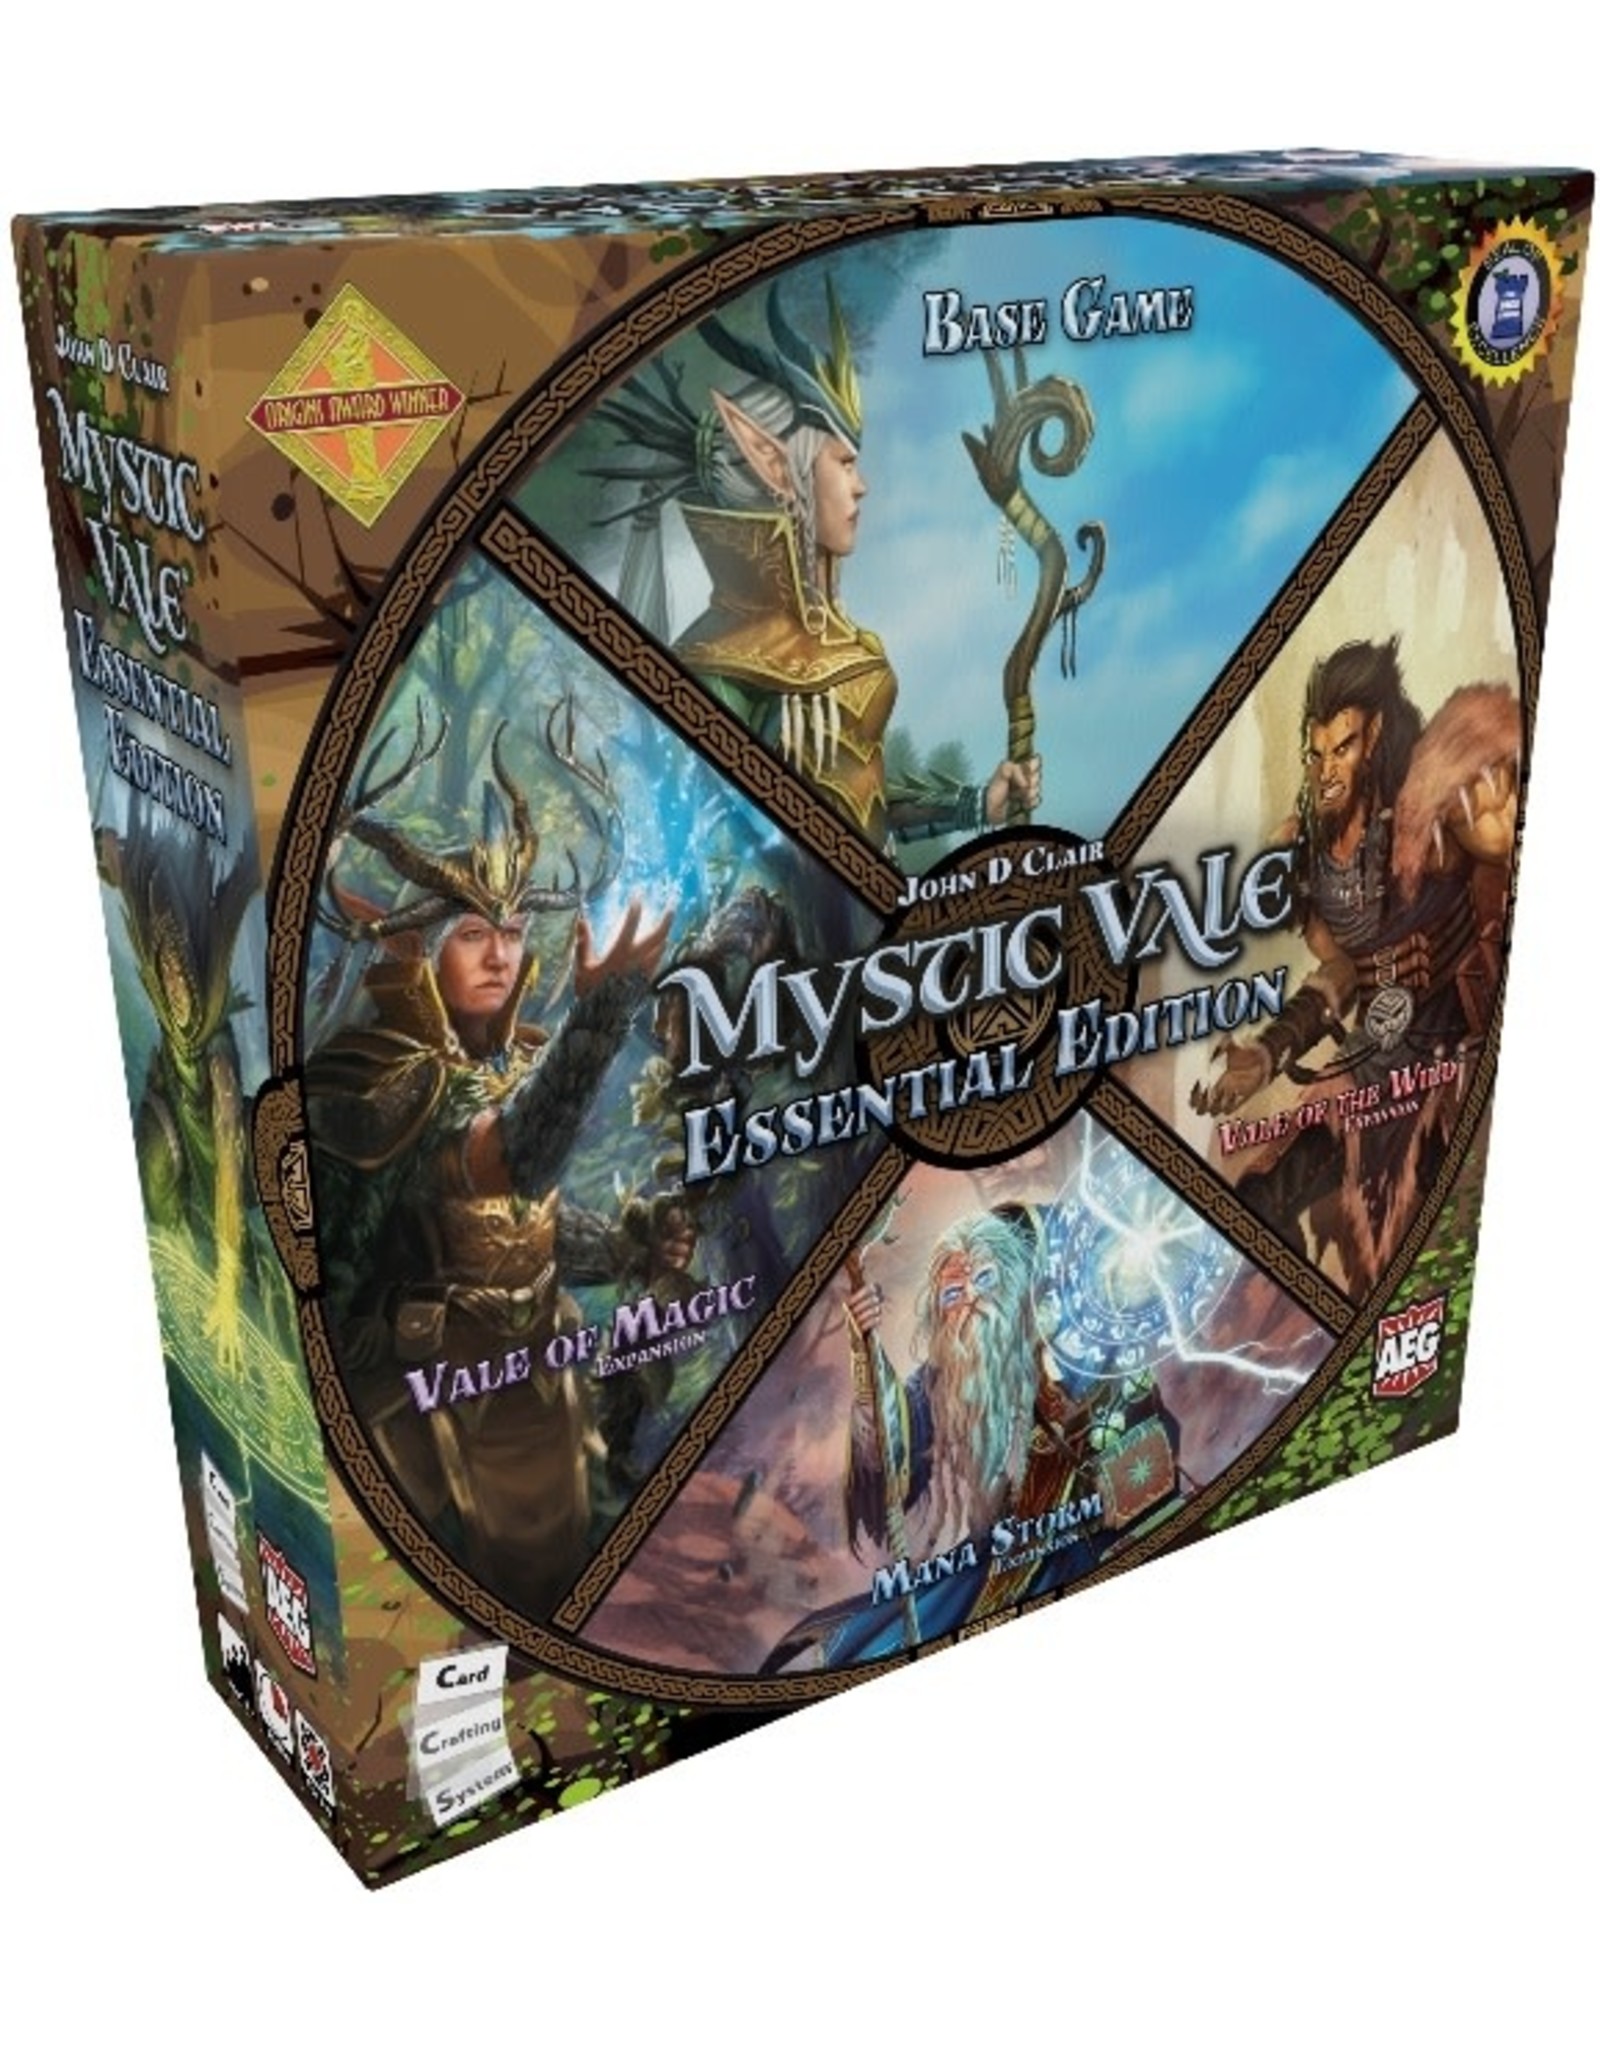 AEG Mystic Vale: Essential Edition